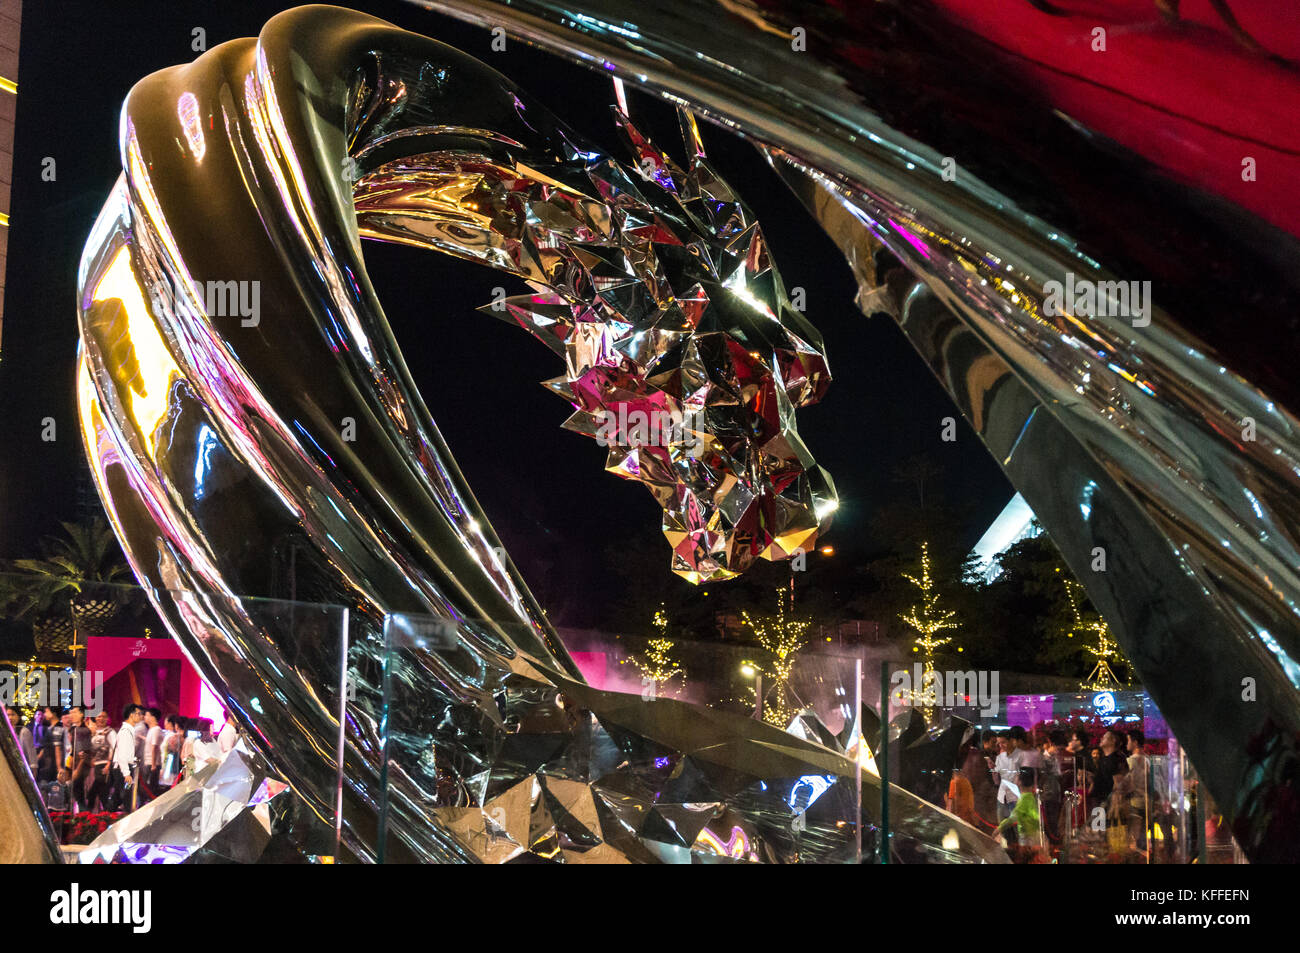 Tête de dragon sculpture de métal dévoilé à grande ouverture de uniwalk, un chinois Mega Mall à Shenzhen, Chine Banque D'Images